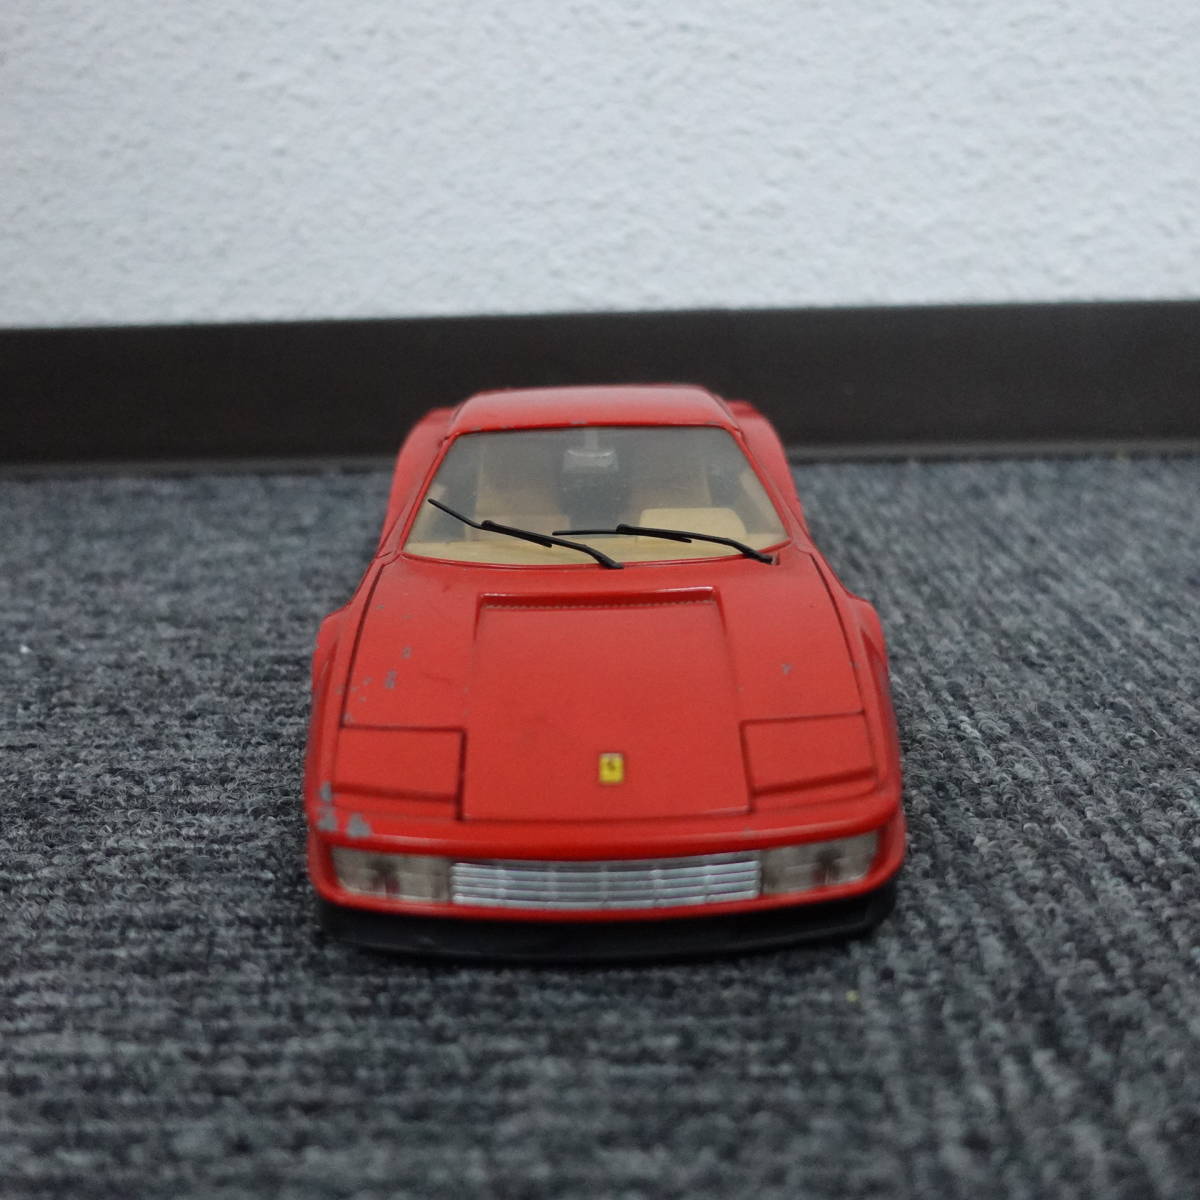 BbUrago Ferrari testarossa（1984）SCALA 1/18 MADE IN ITALY ジャンク ブラーゴ フェラーリ テスタロッサ ミニカー フィギュア_画像3